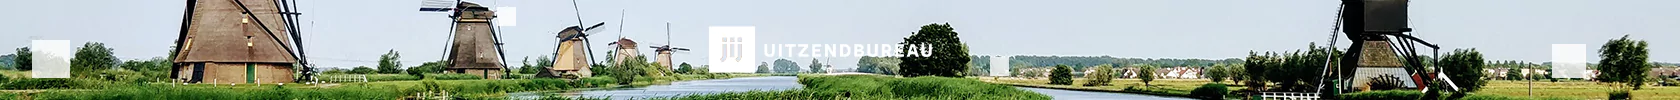 Werken op de wadden - praktische info - afbeelding nederlandse molens